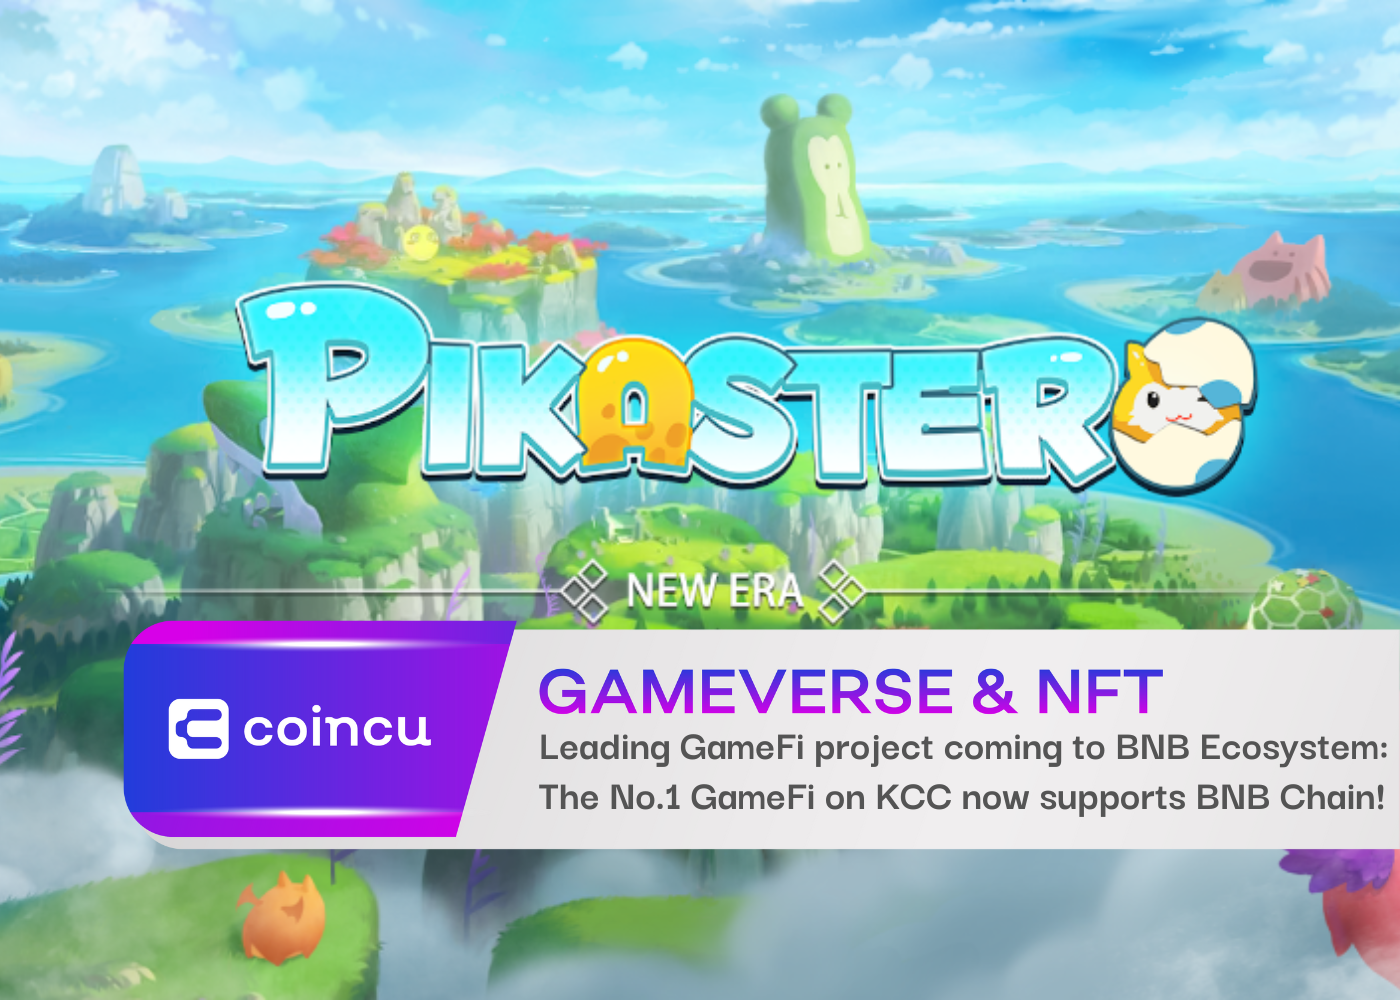 Pikaster - KCC'nin önde gelen GameFi projesi